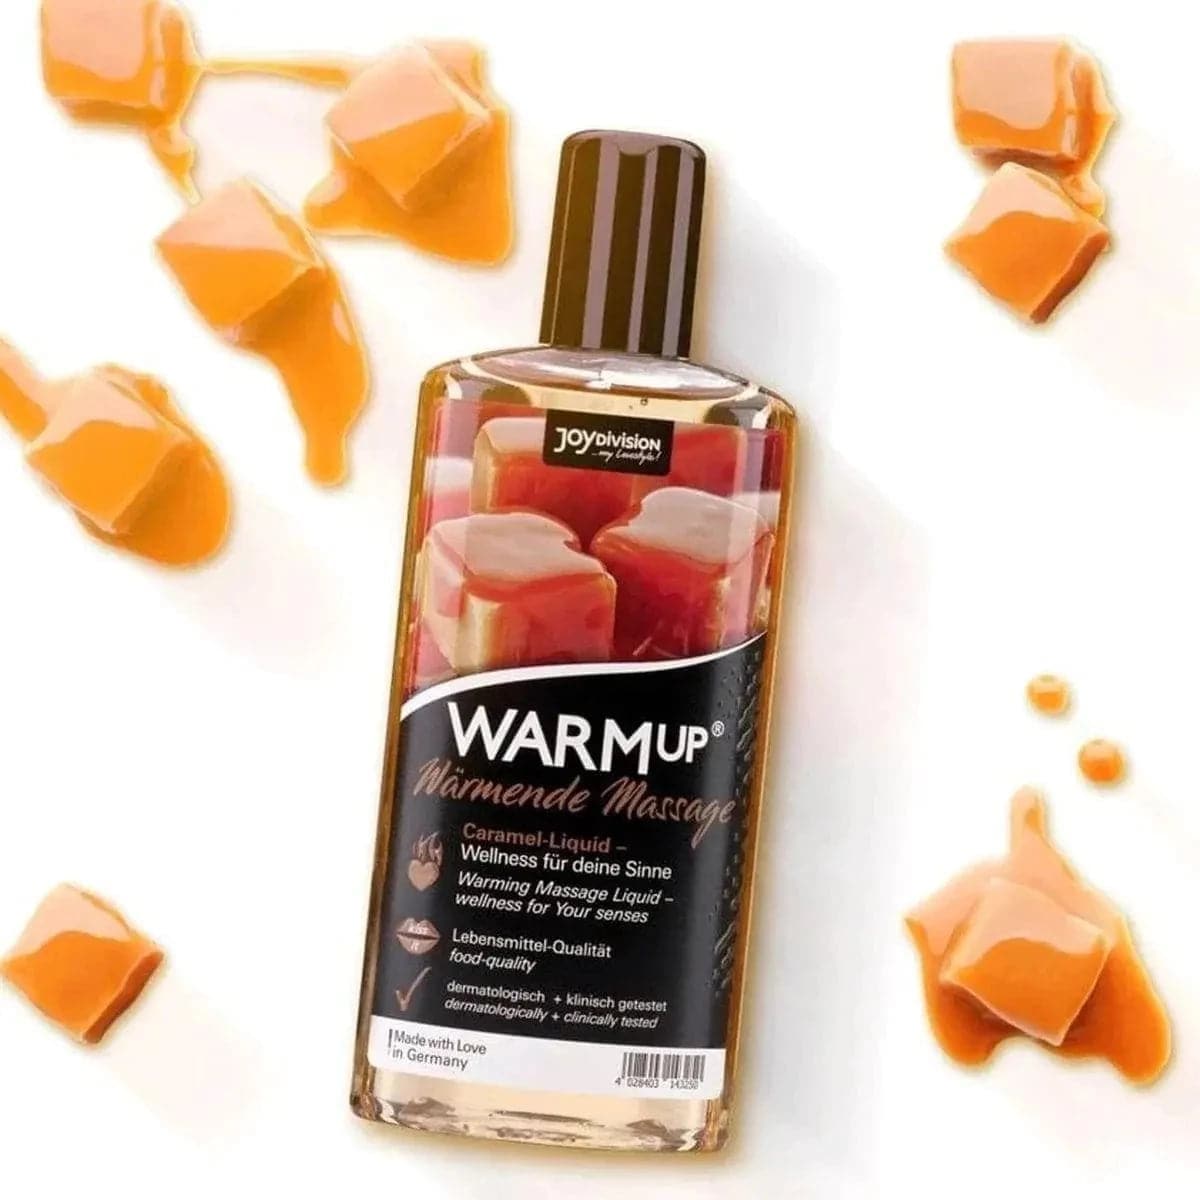 WARMup – Óleo Massagem Comestível Caramelo 150ml - Aquecimento e Aroma de Fruta